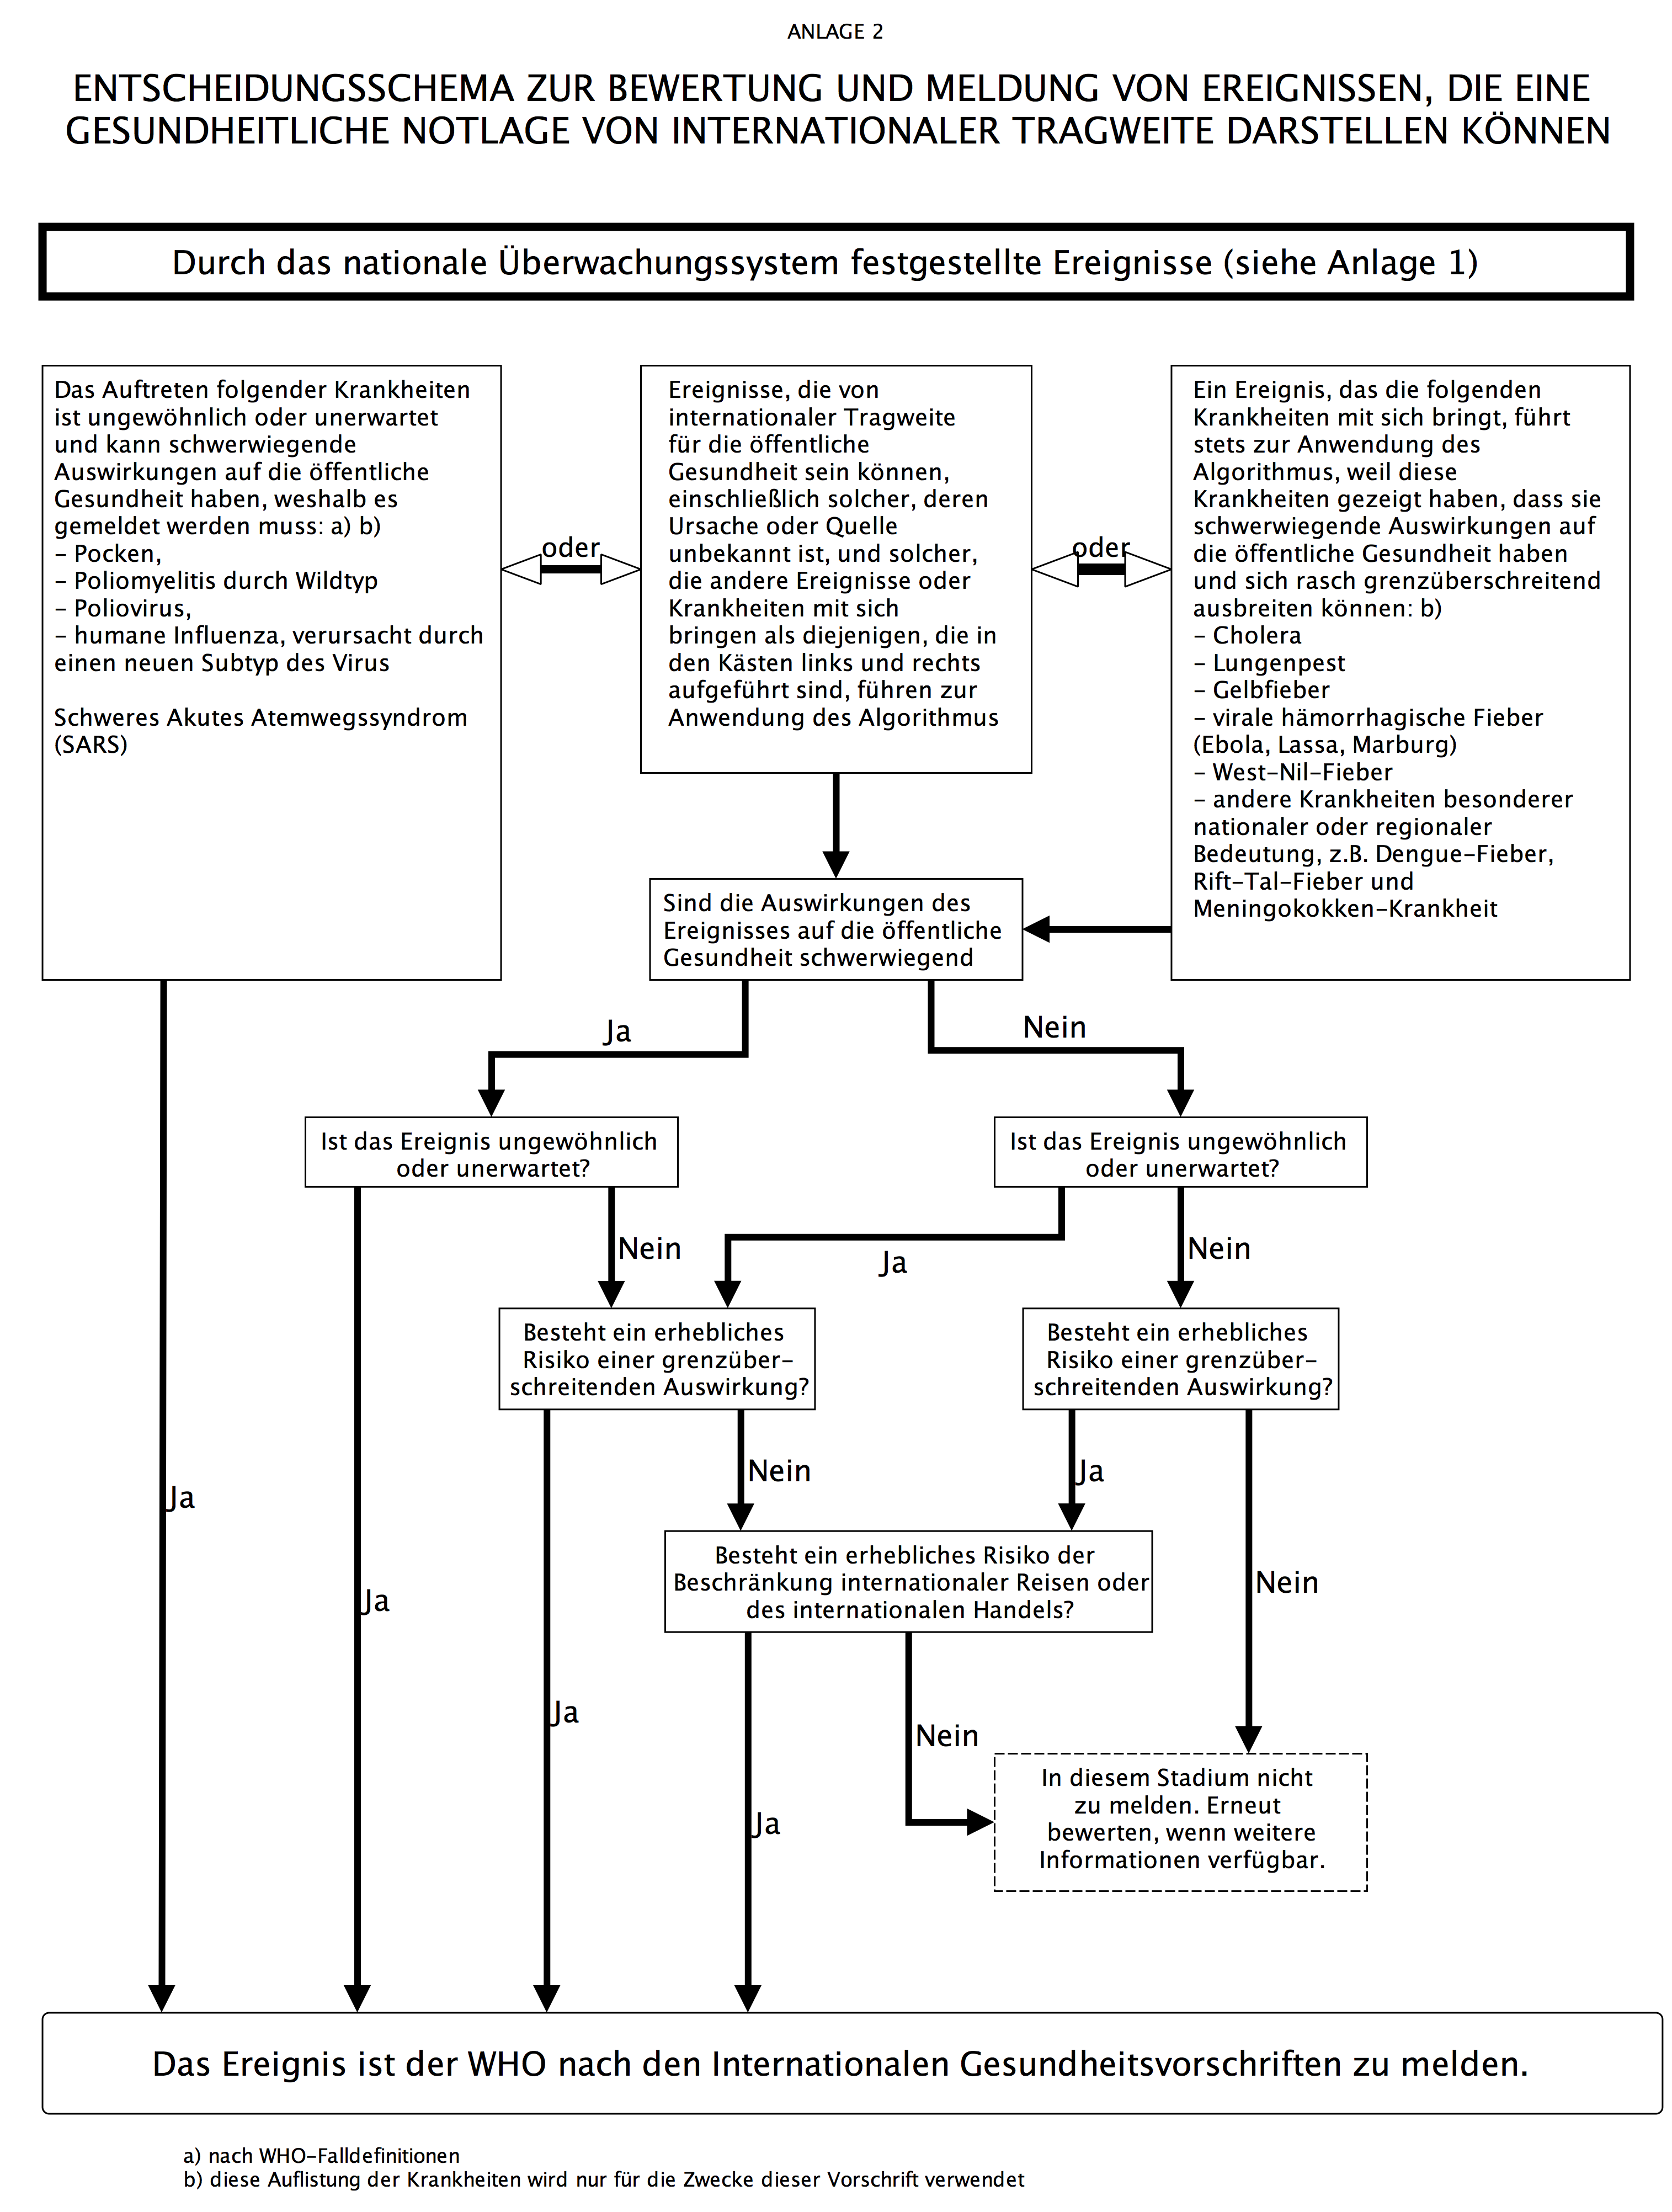 Abbildung 2: Entscheidungsschema zur Bewertung und Meldung von Ereignissen im Rahmen der IGV (Quelle: BKK)